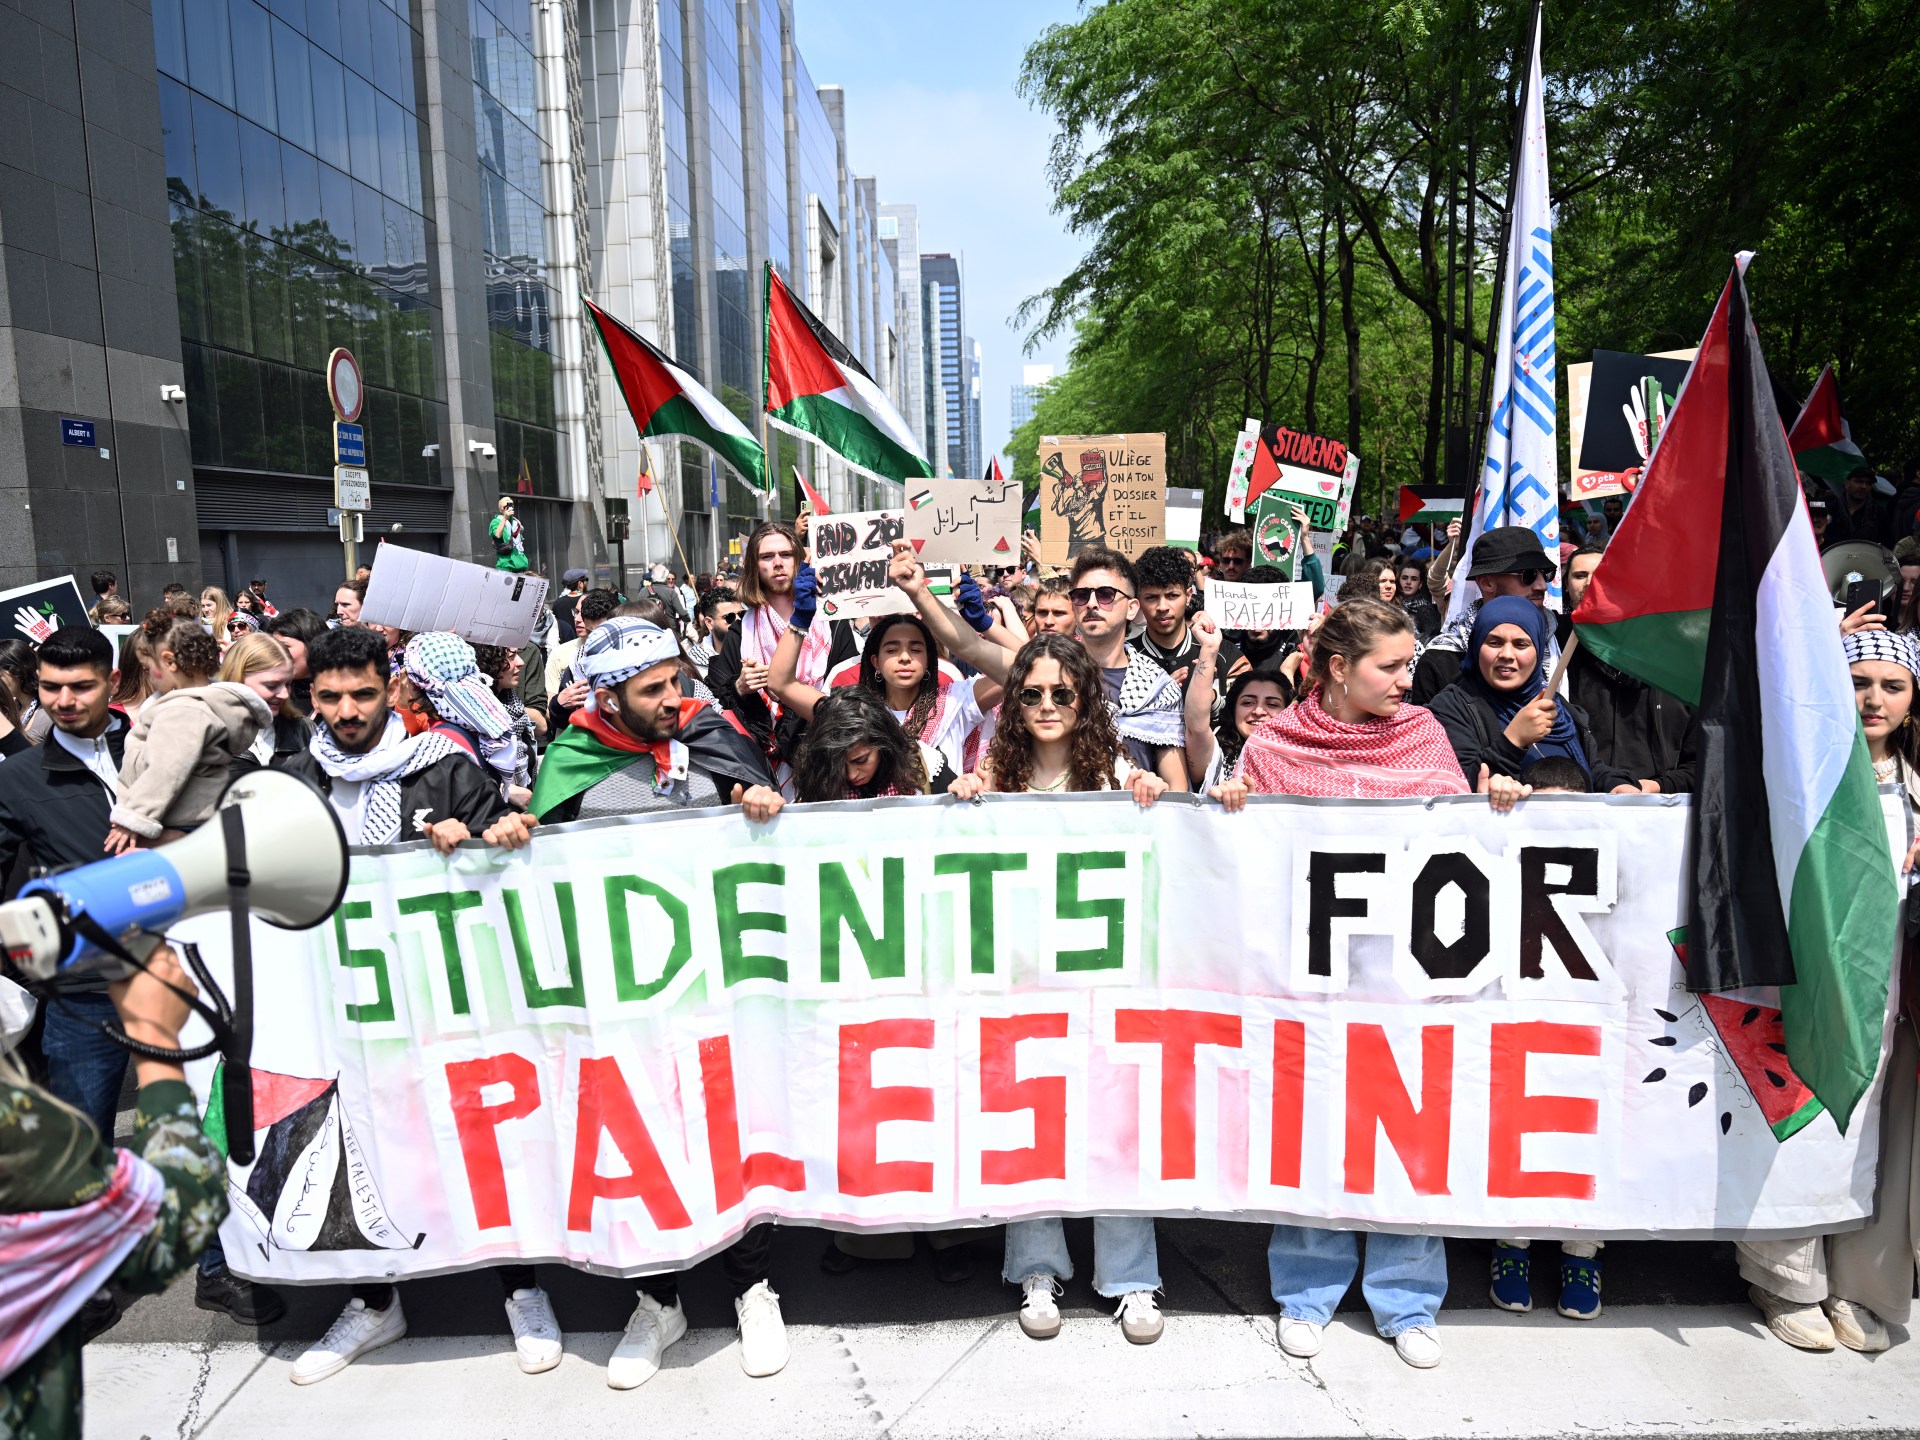 آلاف المتظاهرين في بروكسل يطالبون بفرض عقوبات على إسرائيل | أخبار – البوكس نيوز